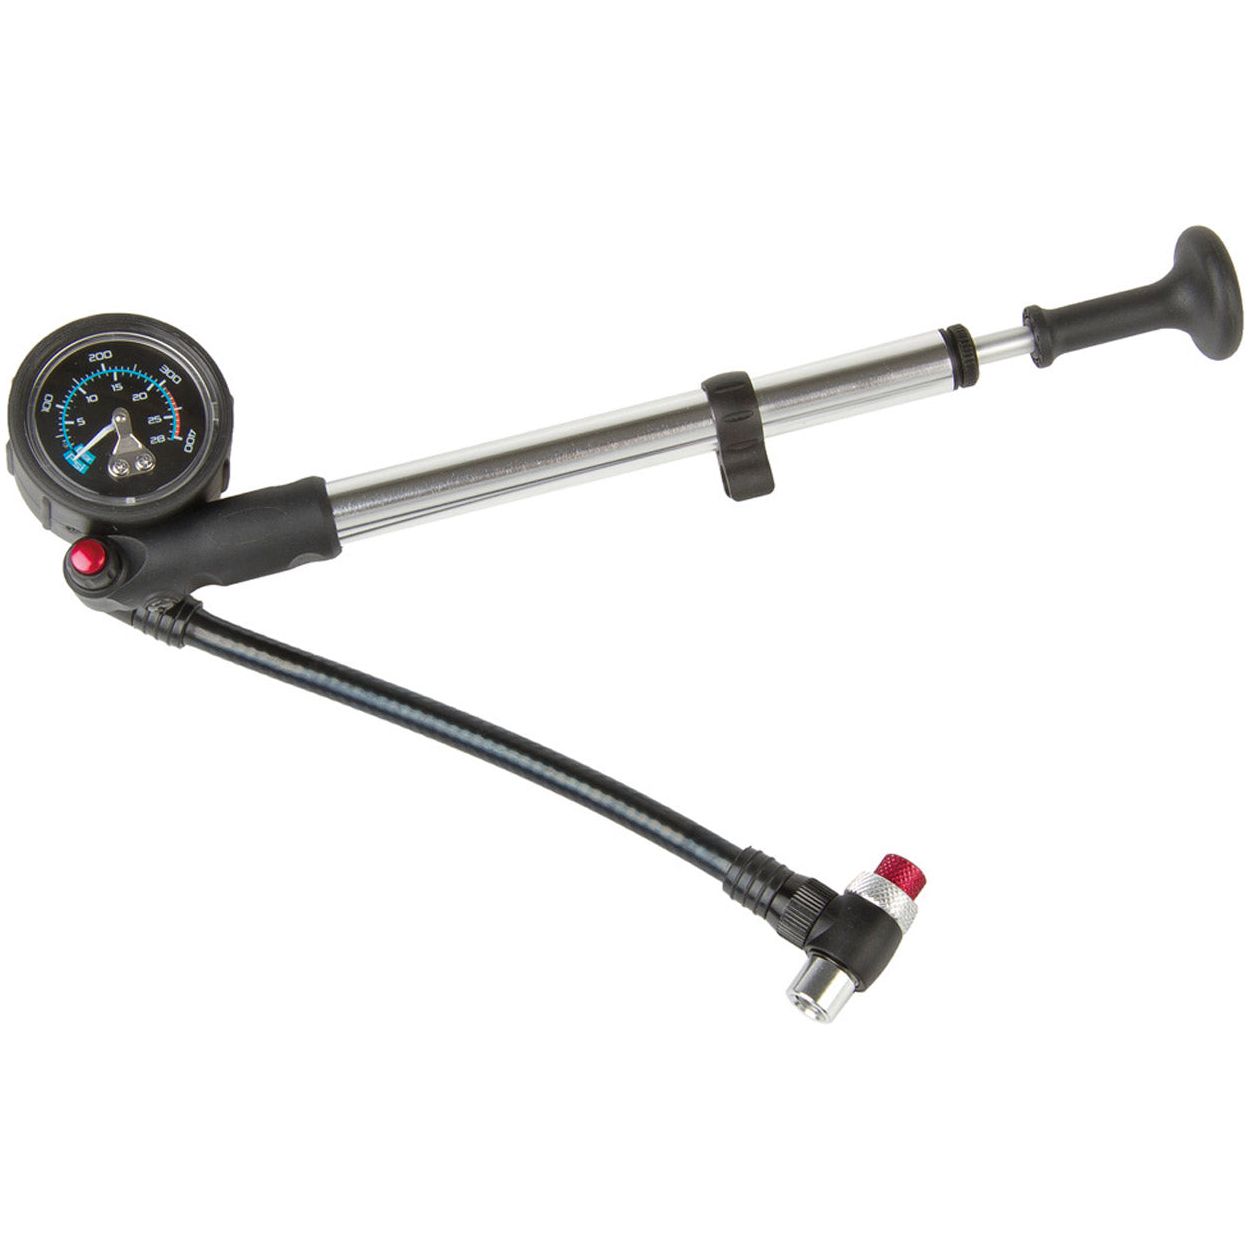 Front fork pump Alu with gauge